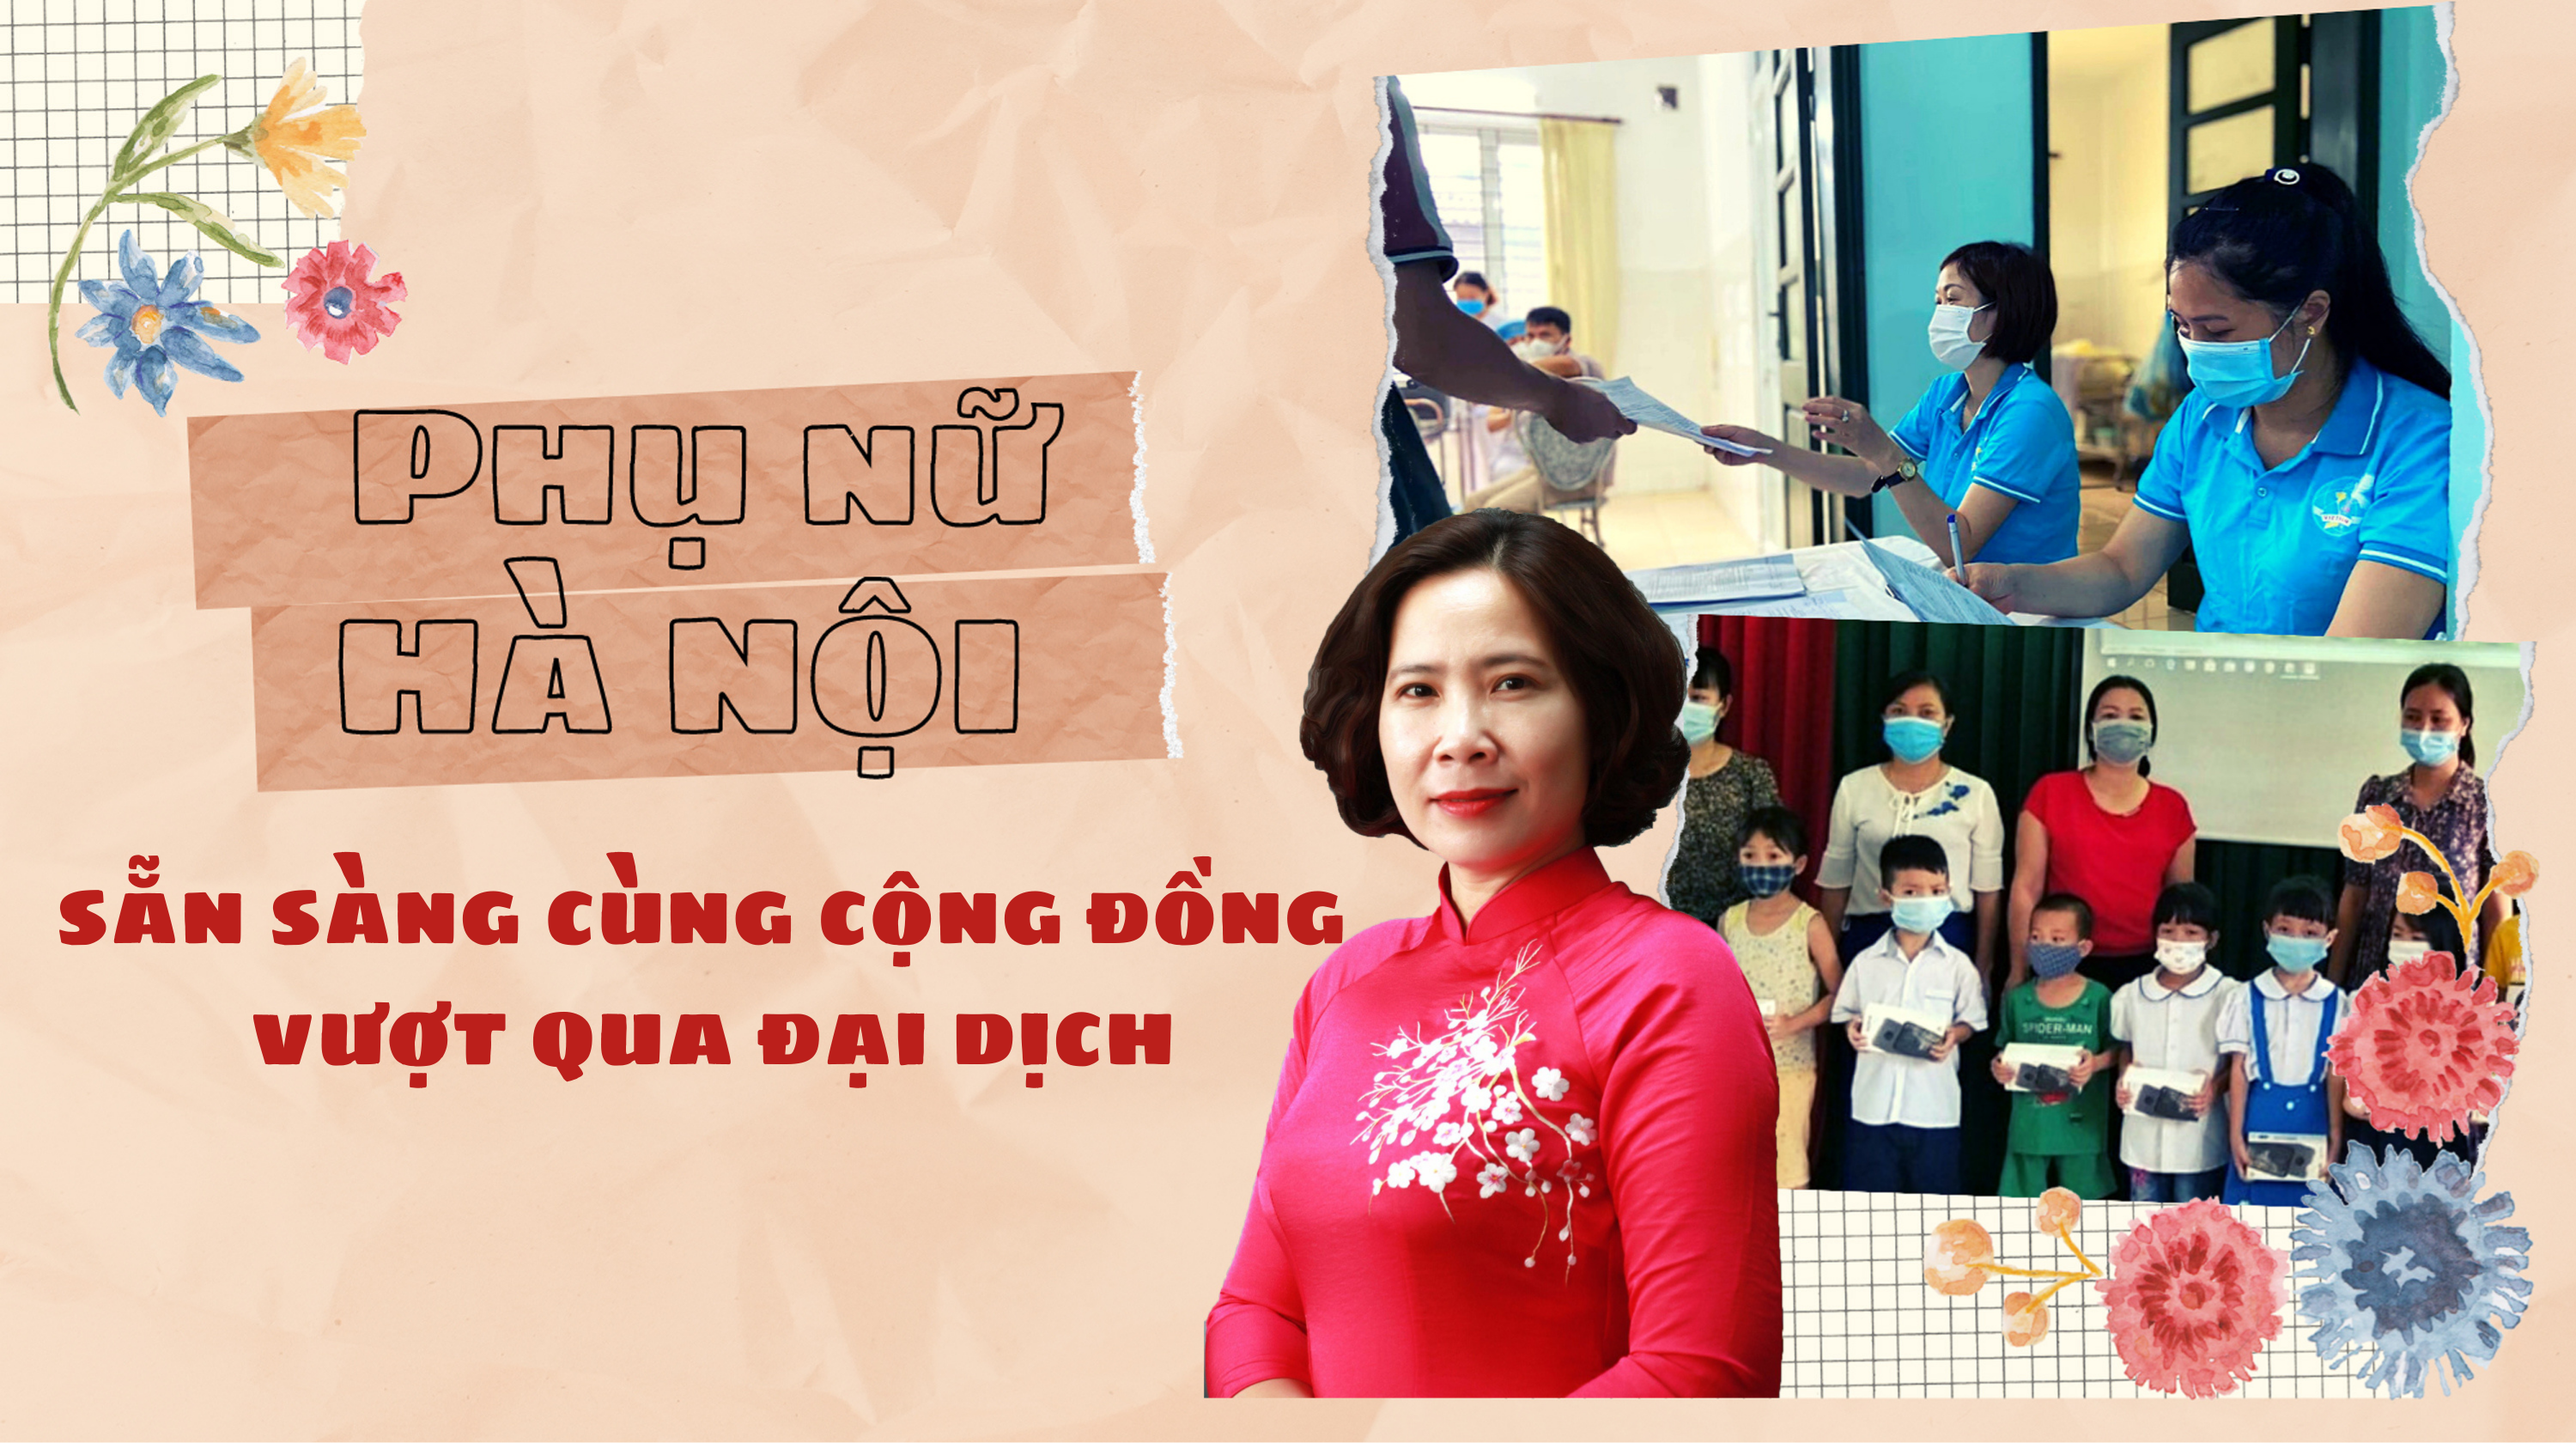 Phụ nữ Hà Nội sẵn sàng cùng cộng đồng vượt qua đại dịch